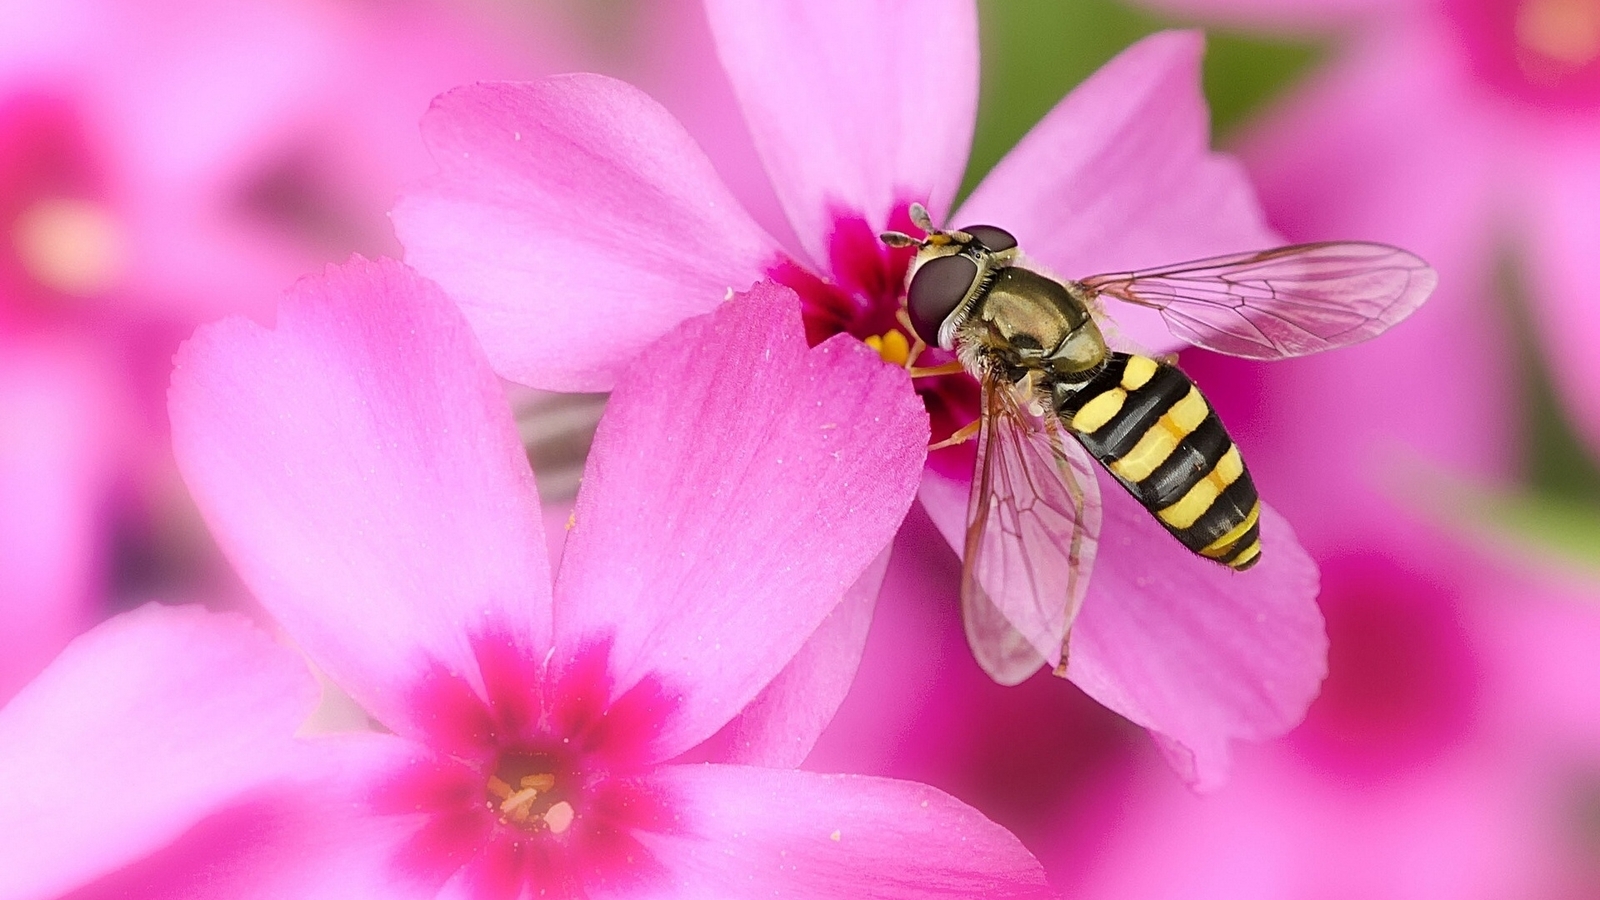 Image: Fly, murmur, beekeeper, pink, flower